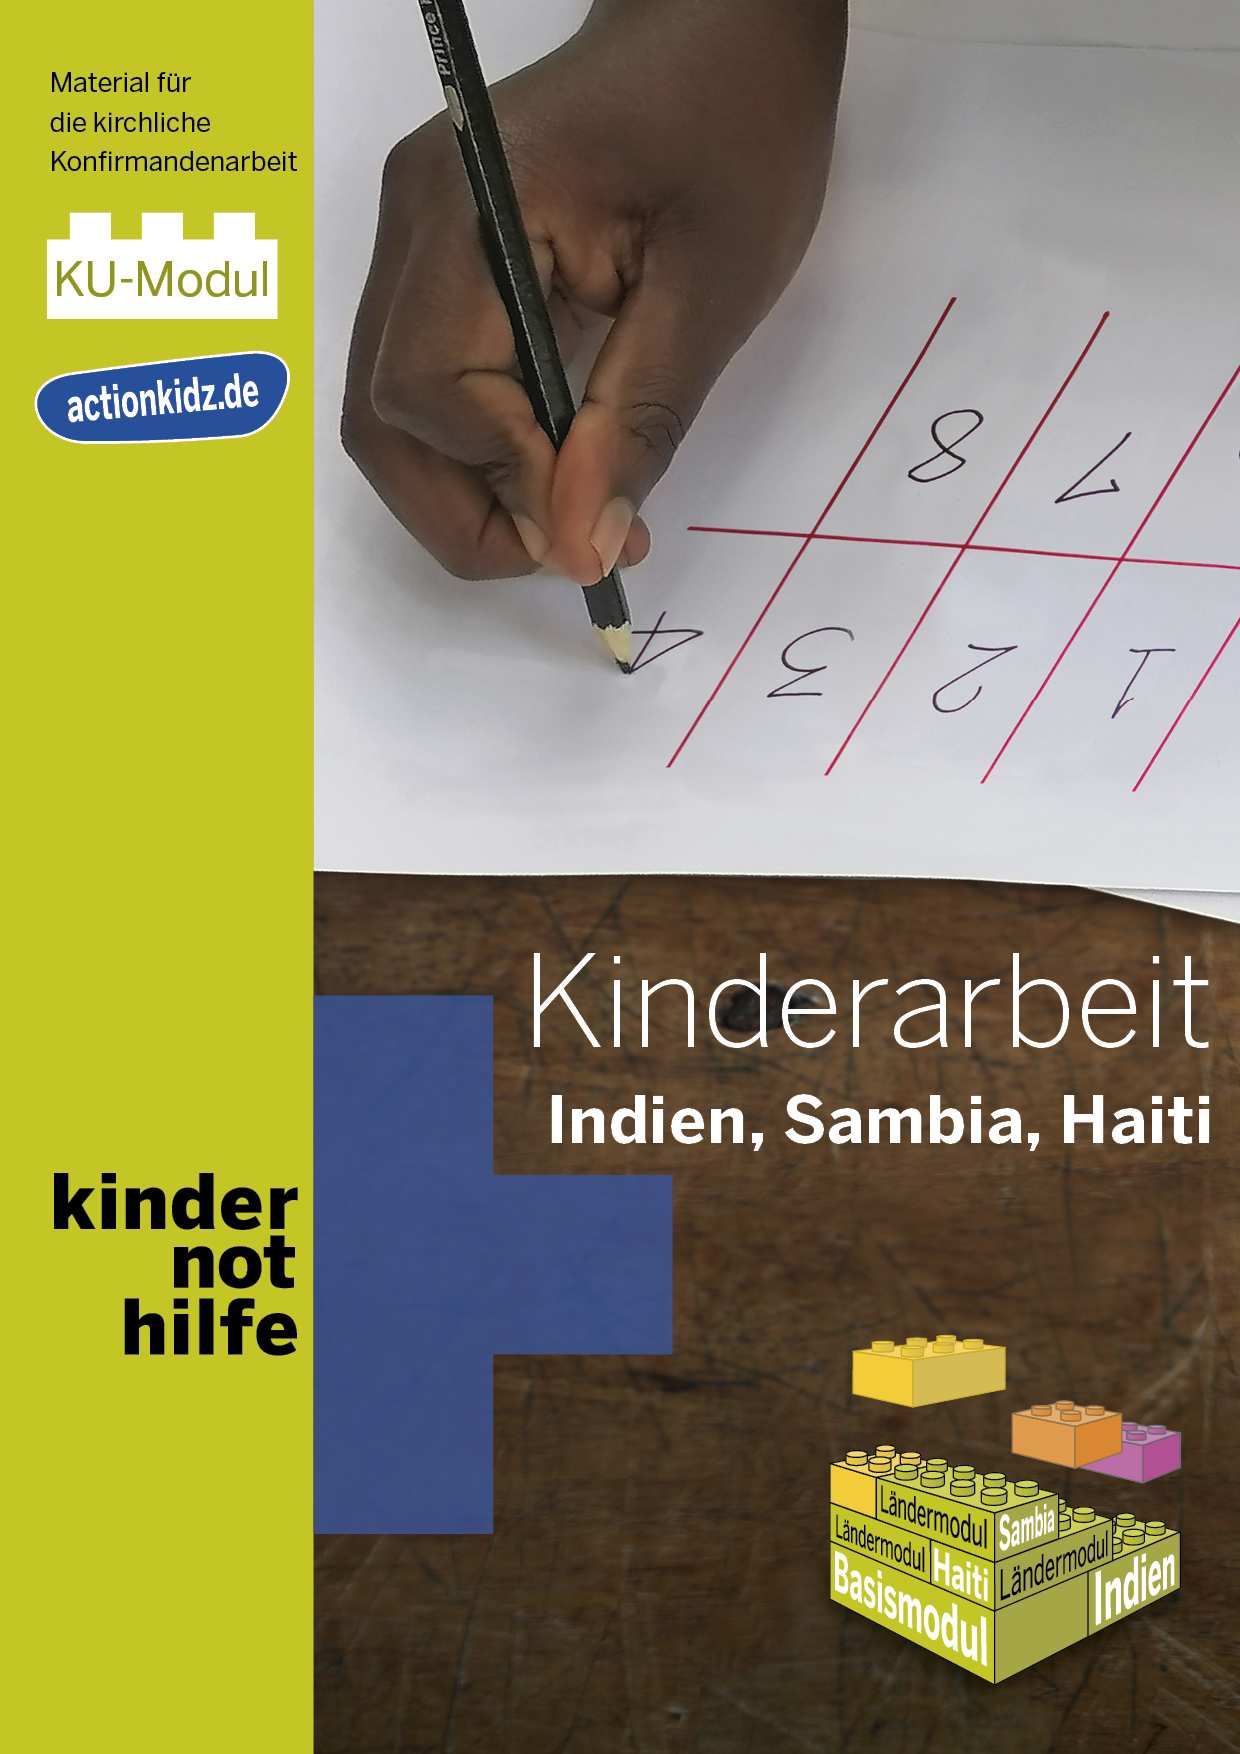 Cover des Action!Kidz-Moduls für den kirchlichen Unterricht (Quelle: Kindernothilfe)